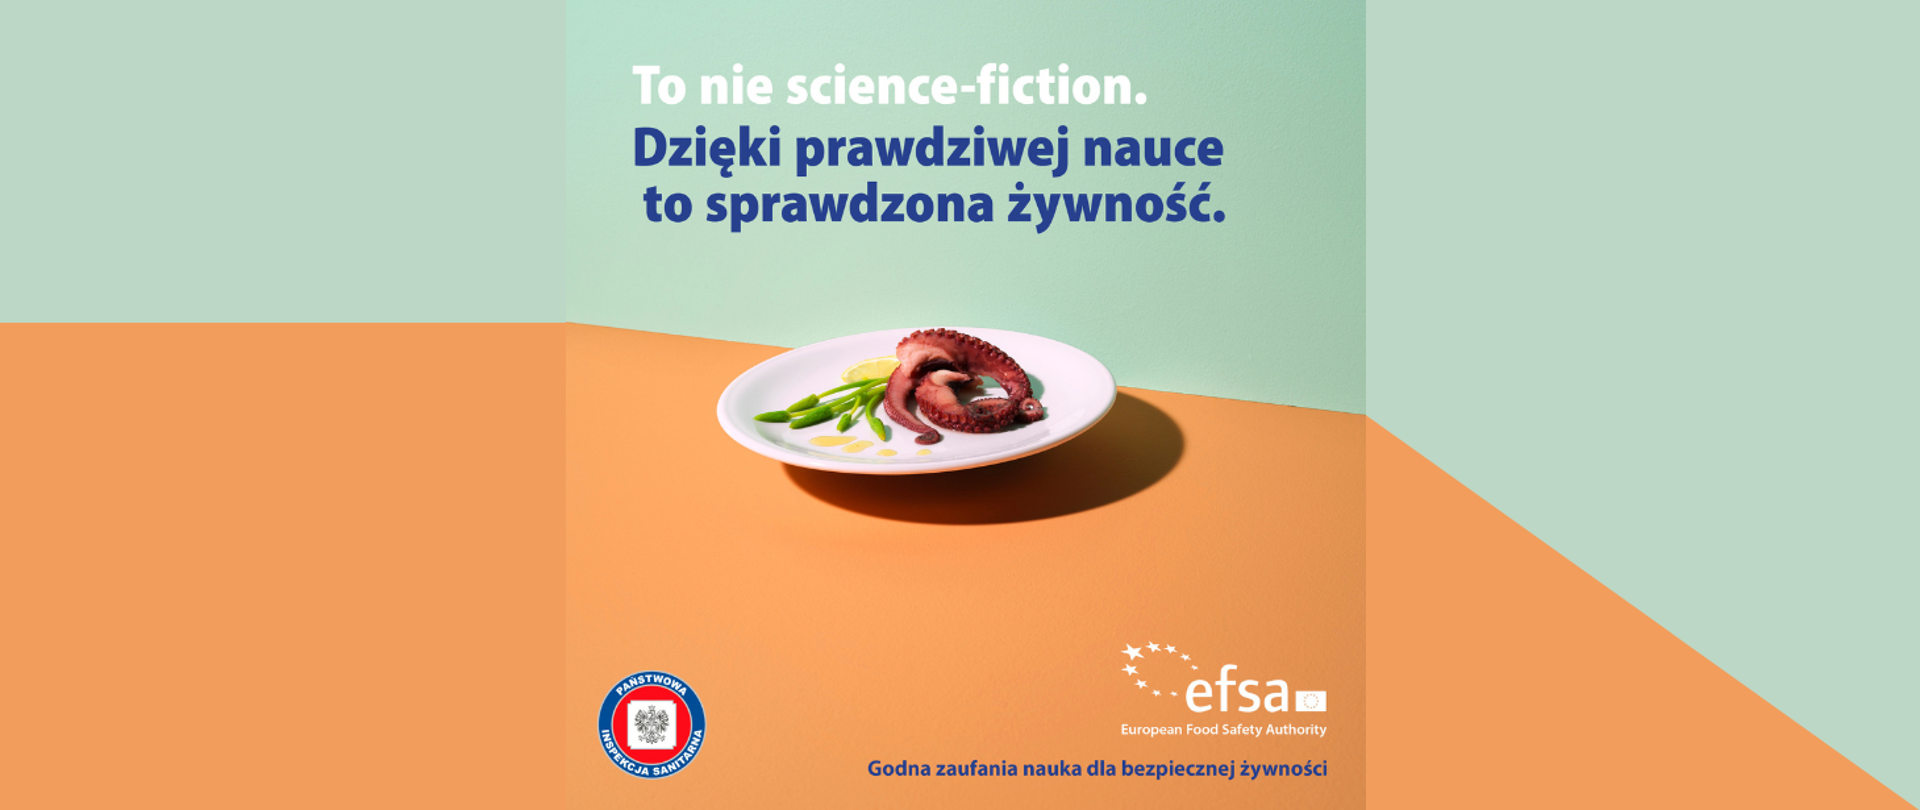 Grafika przedstawia talerz z daniem z ośmiorniczki na pomarańczowo zielonym tle. Nad talerzem widnieje napis: To nie science-fiction. Dzięki prawdziwej nauce to sprawdzona żywność. Na dole grafiki widnieje logo Państwowej Inspekcji Sanitarnej oraz EFSA z napisem: Godna zaufania nauka dla bezpiecznej żywności.